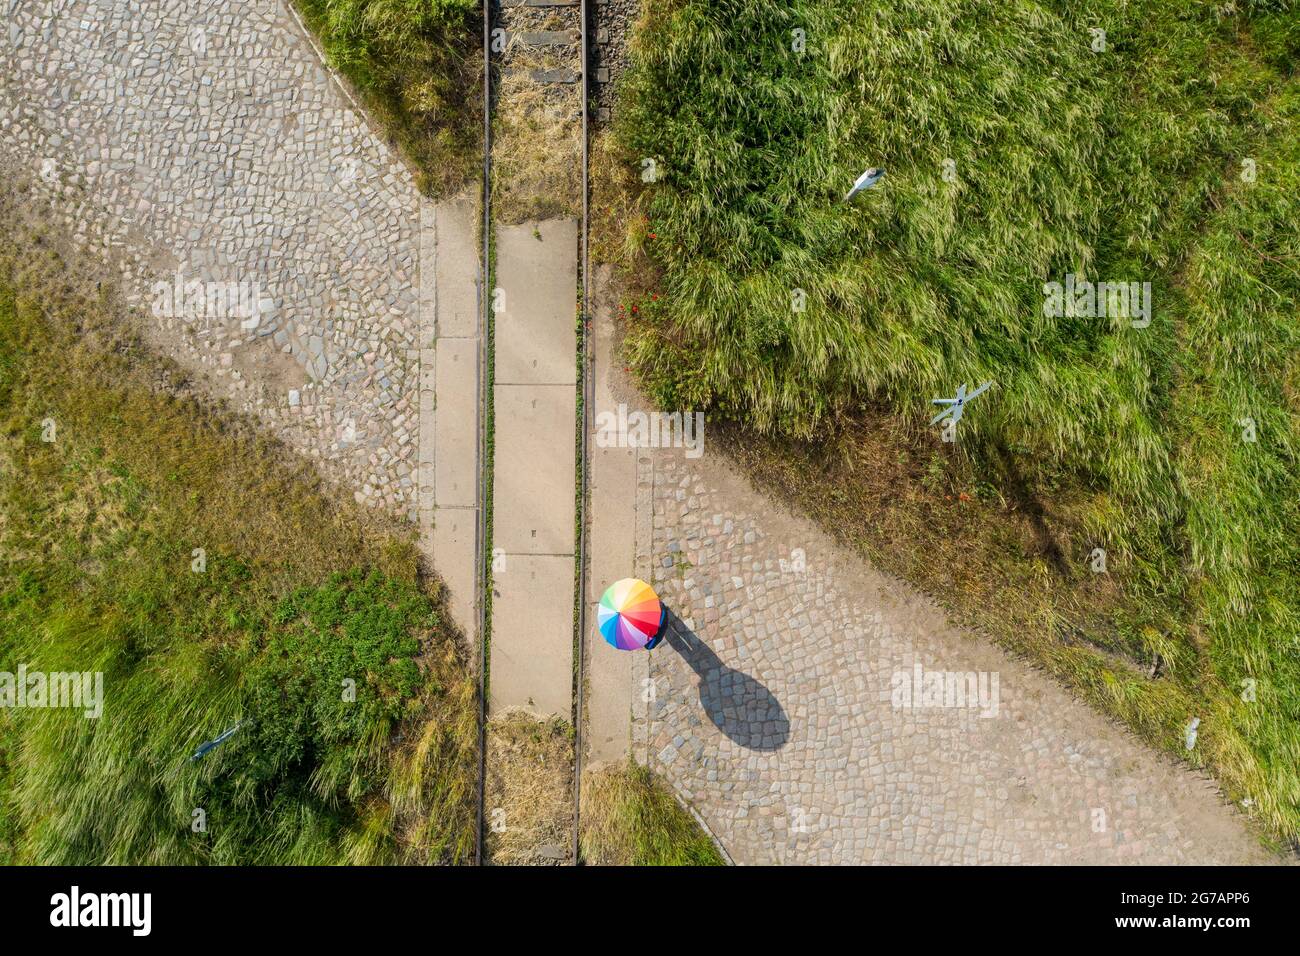 Eine Person steht mit einem Regenschirm auf einer stillgebrachten Eisenbahnstrecke Stockfoto